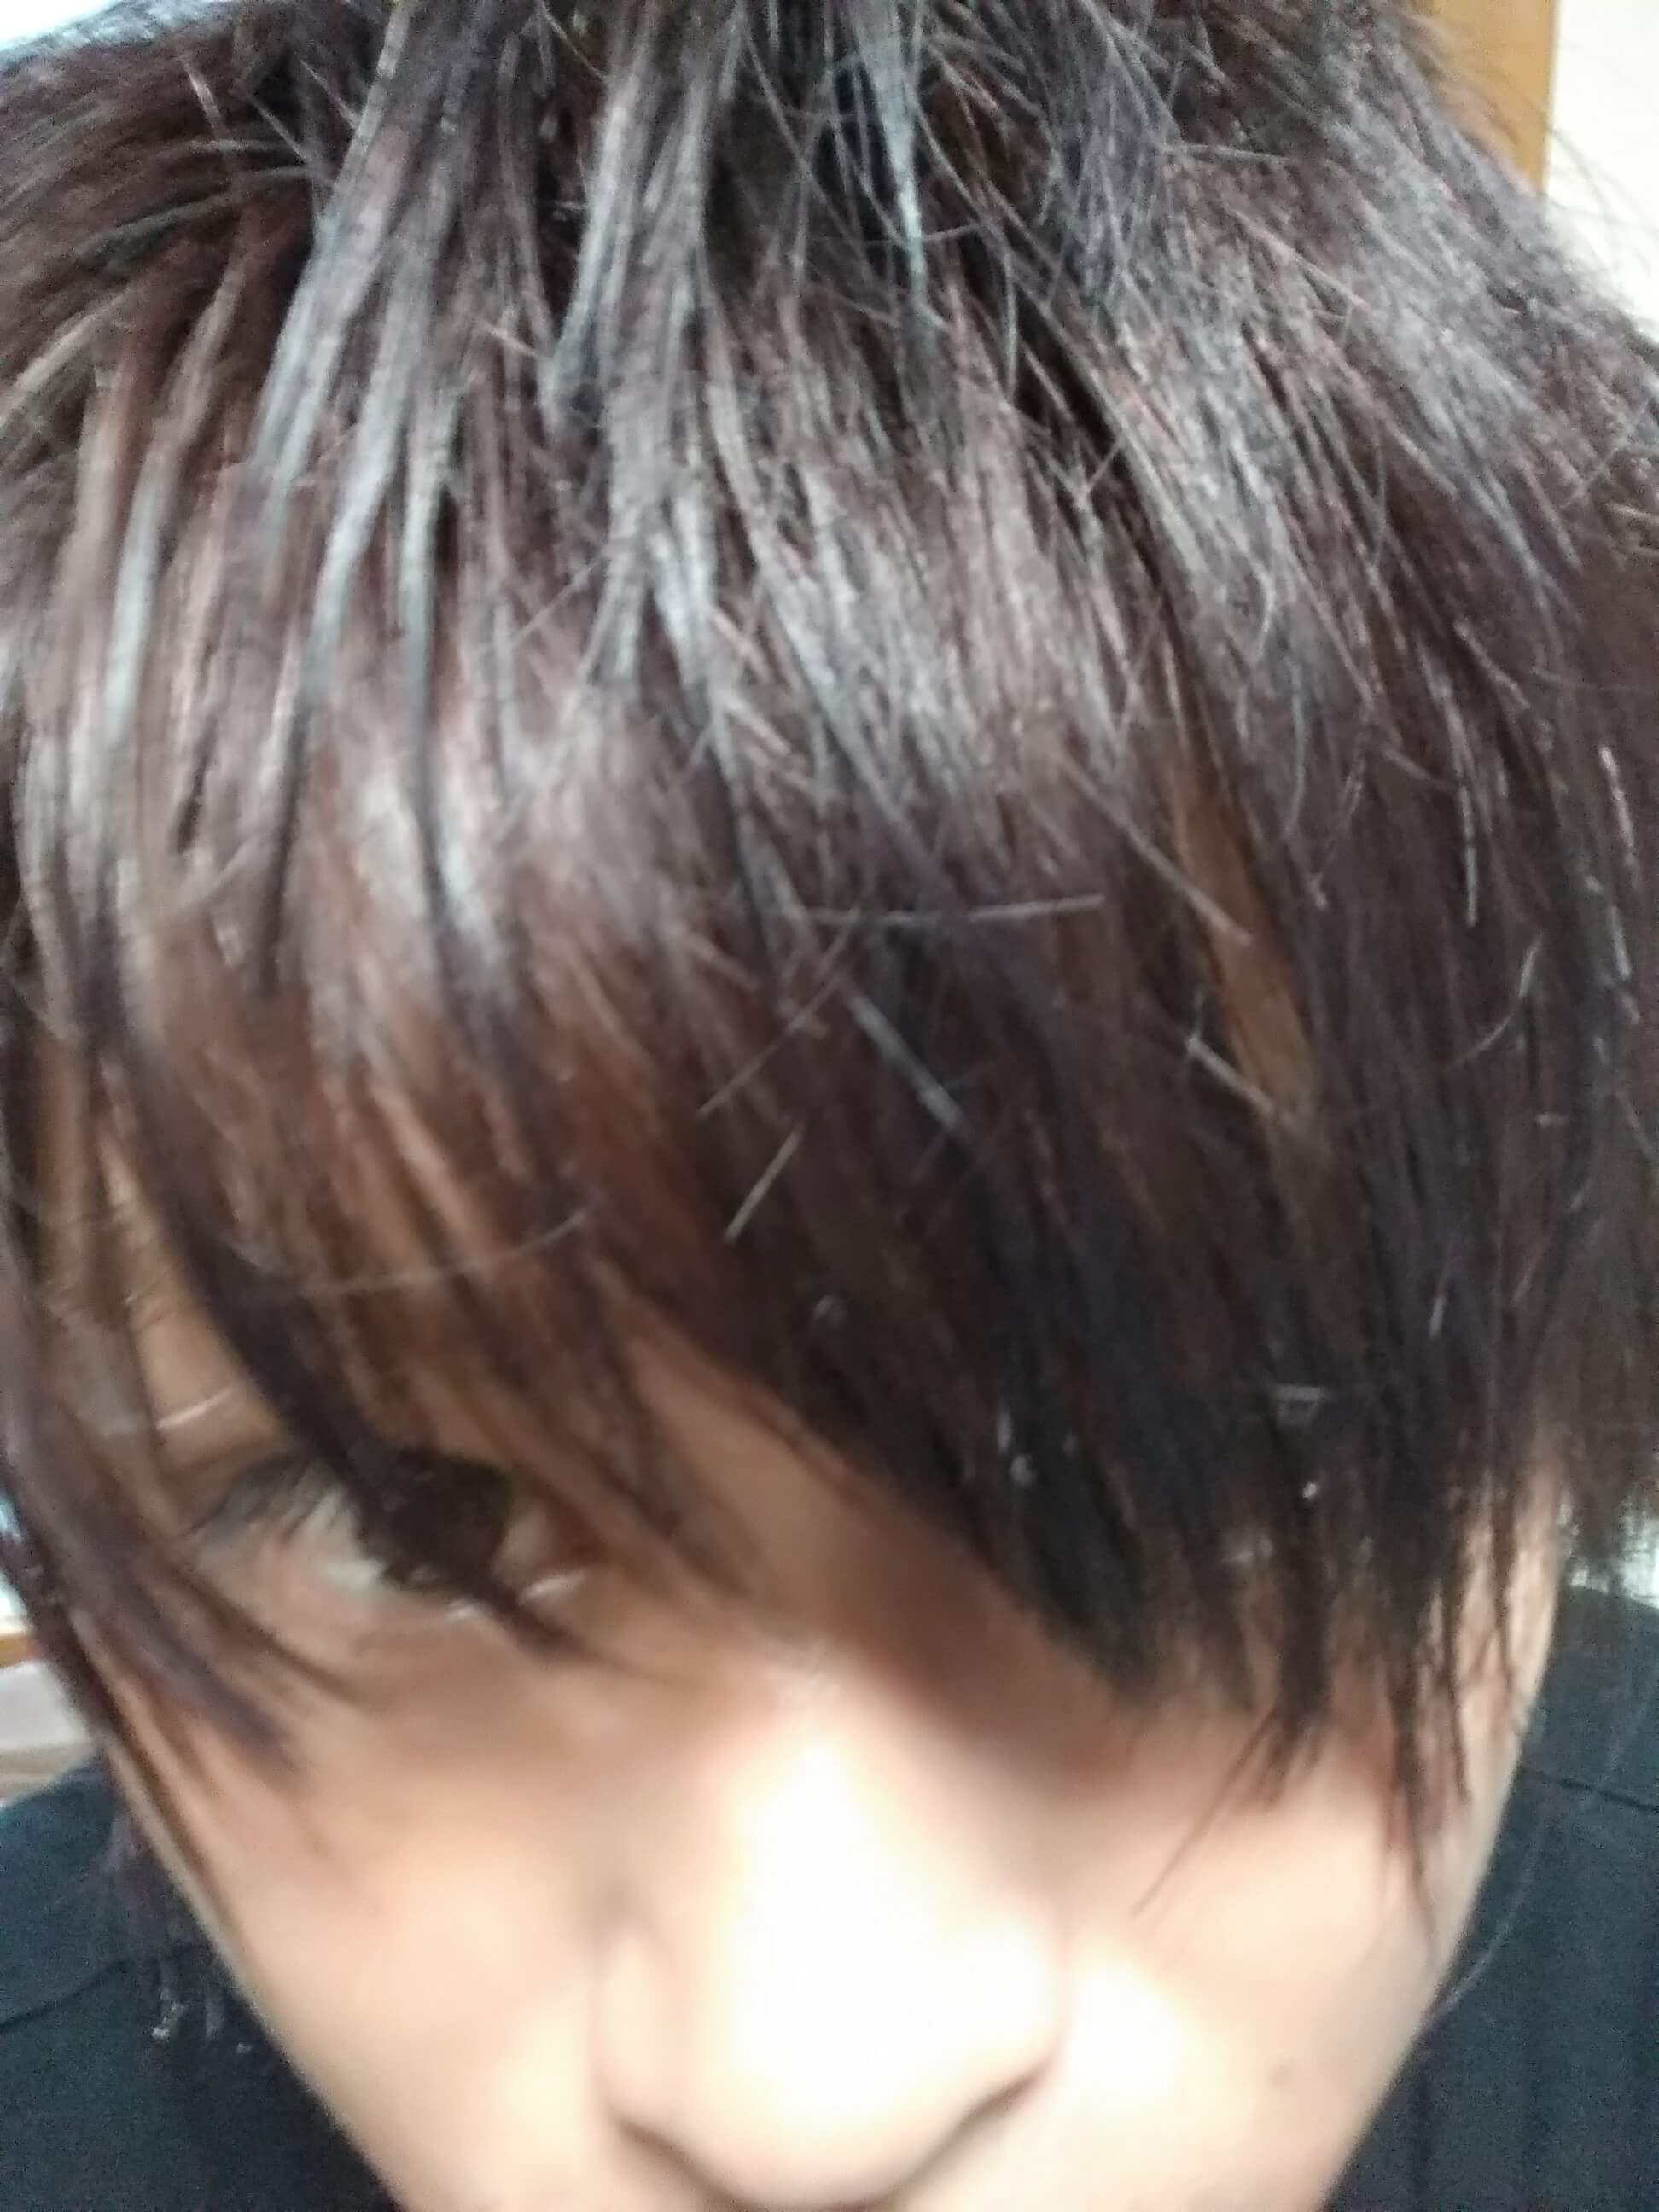 温度で髪色が変わるヘアカラー Fire がすごい 日本でもアマゾンで販売開始 桑原淳 Junkuwabara 旅人美容師世界一周1000人カット 超超エリート株式会社代表